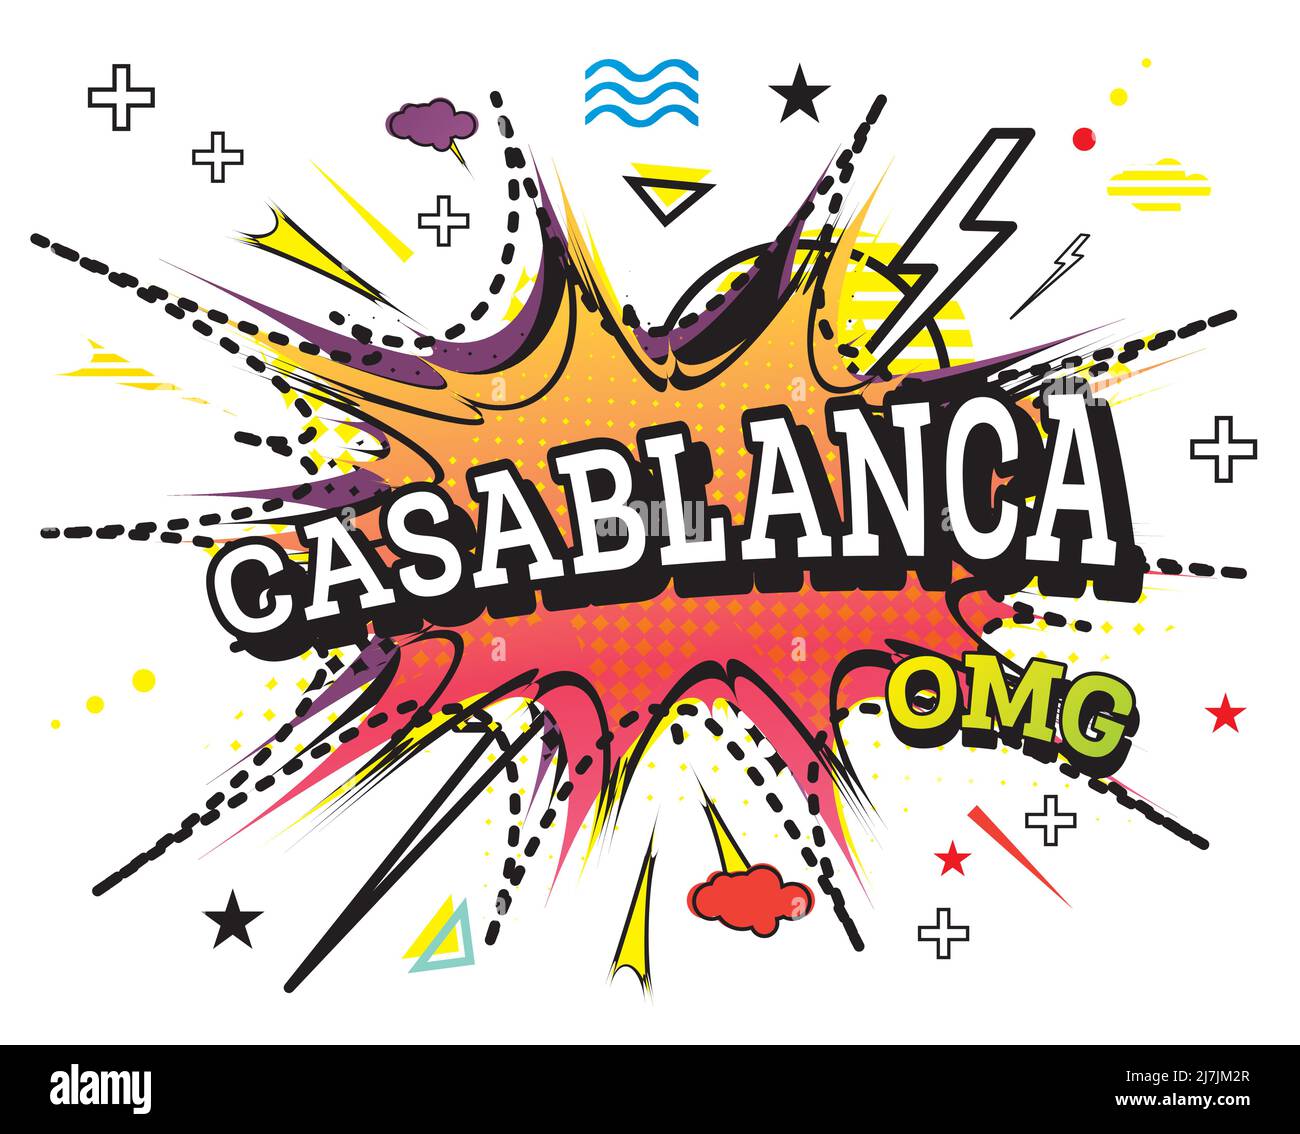 Casablanca Comic texte en Pop Art style isolé sur fond blanc. Illustration vectorielle. Illustration de Vecteur